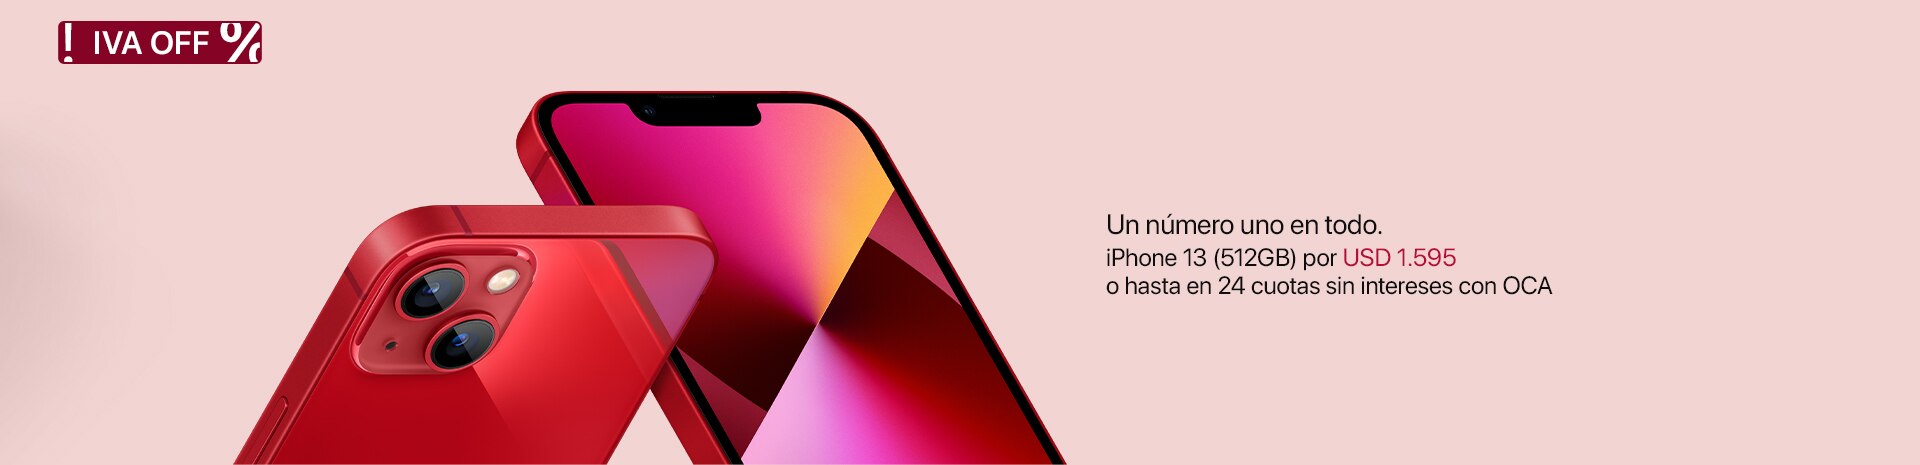 iPhone 13 | Regalos con Amor iPlace